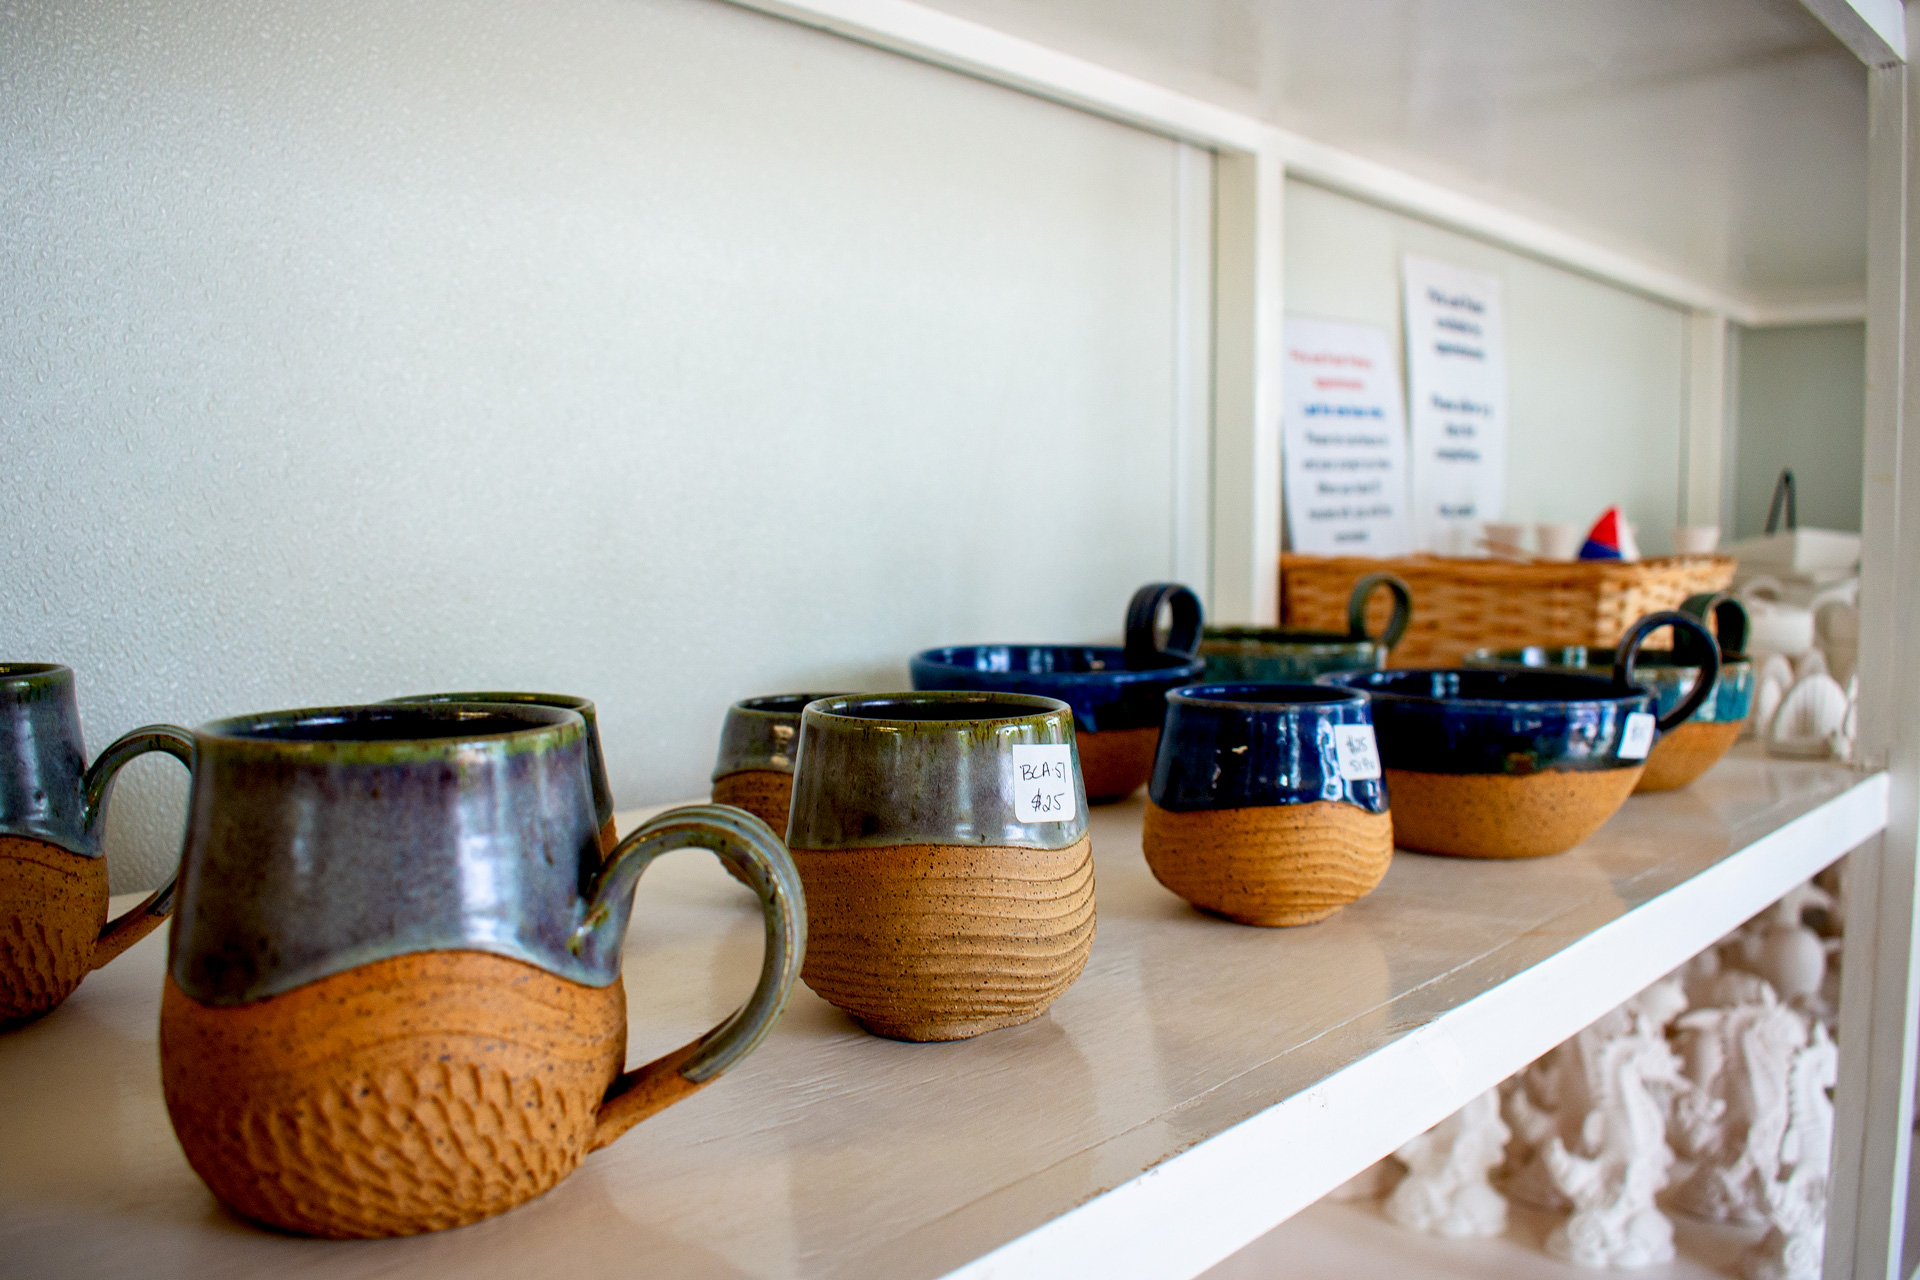 Handmade mugs at OBAC